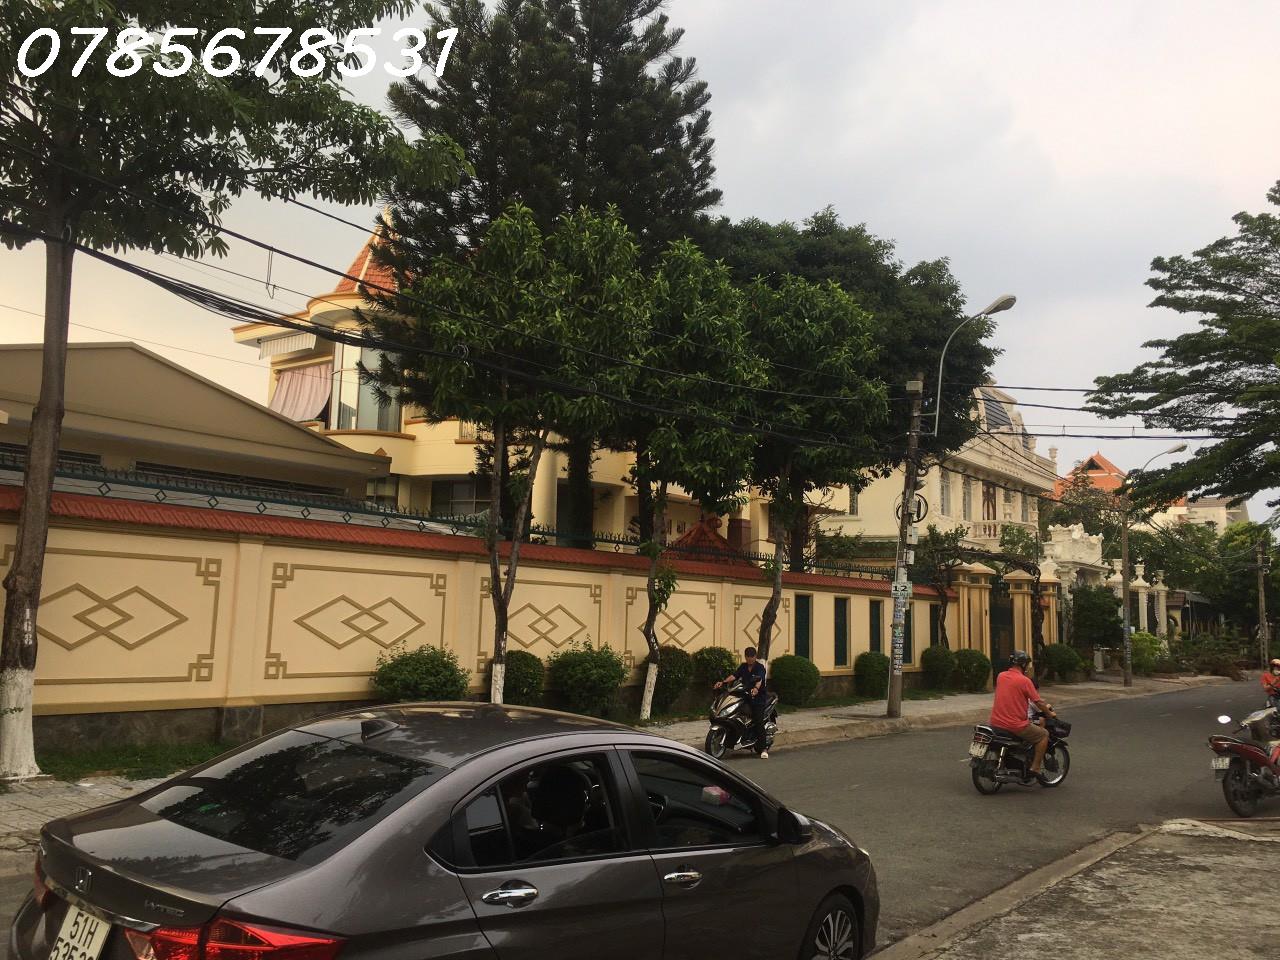 Bán nhà Mặt Tiền, Huỳnh Thị Hai Tân Chánh Hiệp, ngang 8,2m, quận 12,Sài Gòn - Ảnh 1